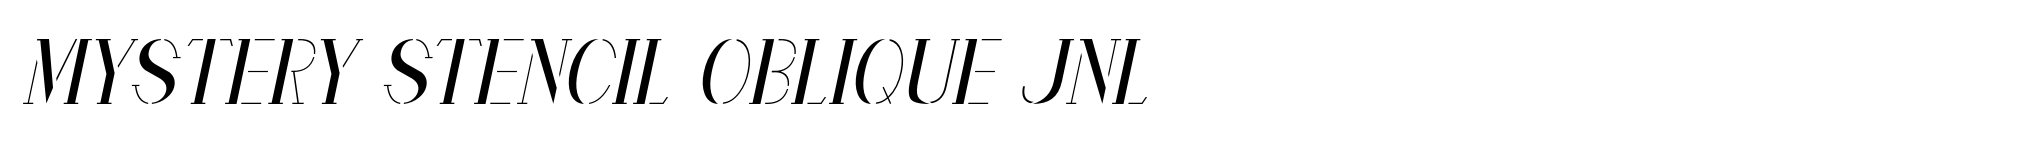 Mystery Stencil Oblique JNL image